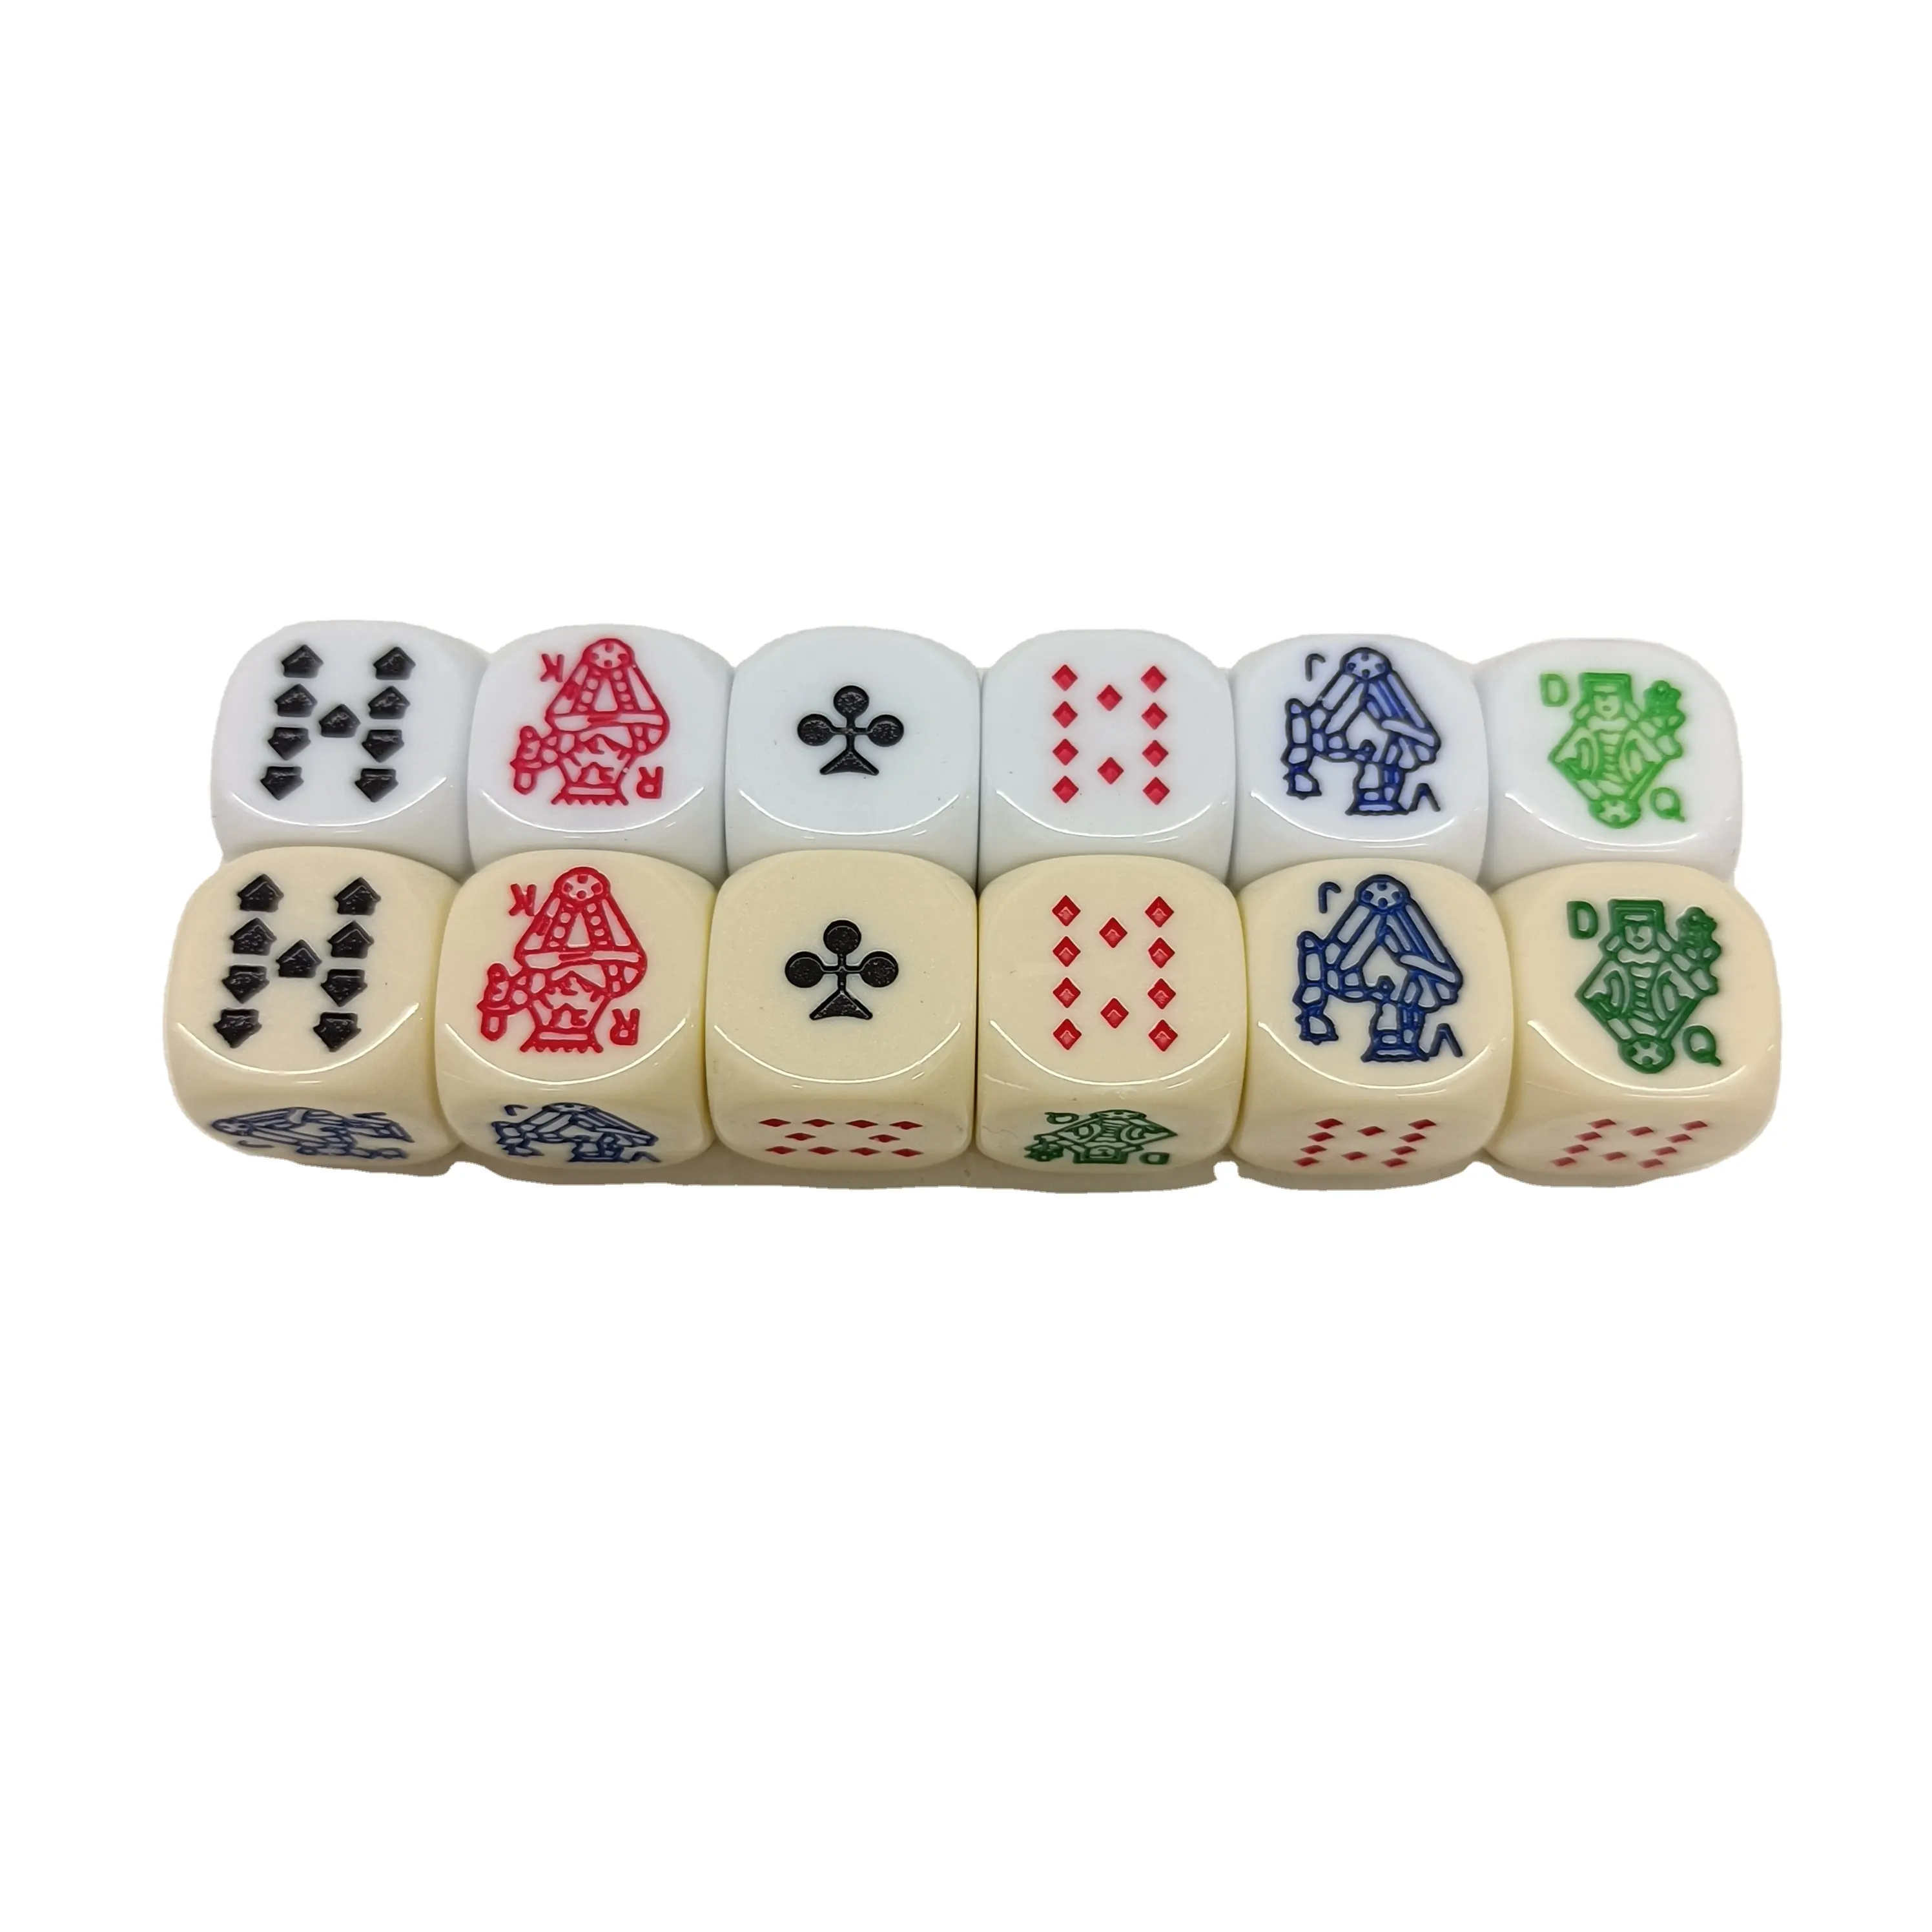 Vente en gros de dés de poker en acrylique personnalisés de 16mm dés ronds à 6 faces blanc ivoire avec logo personnalisé pour jeu de poker Offre Spéciale dés en vrac